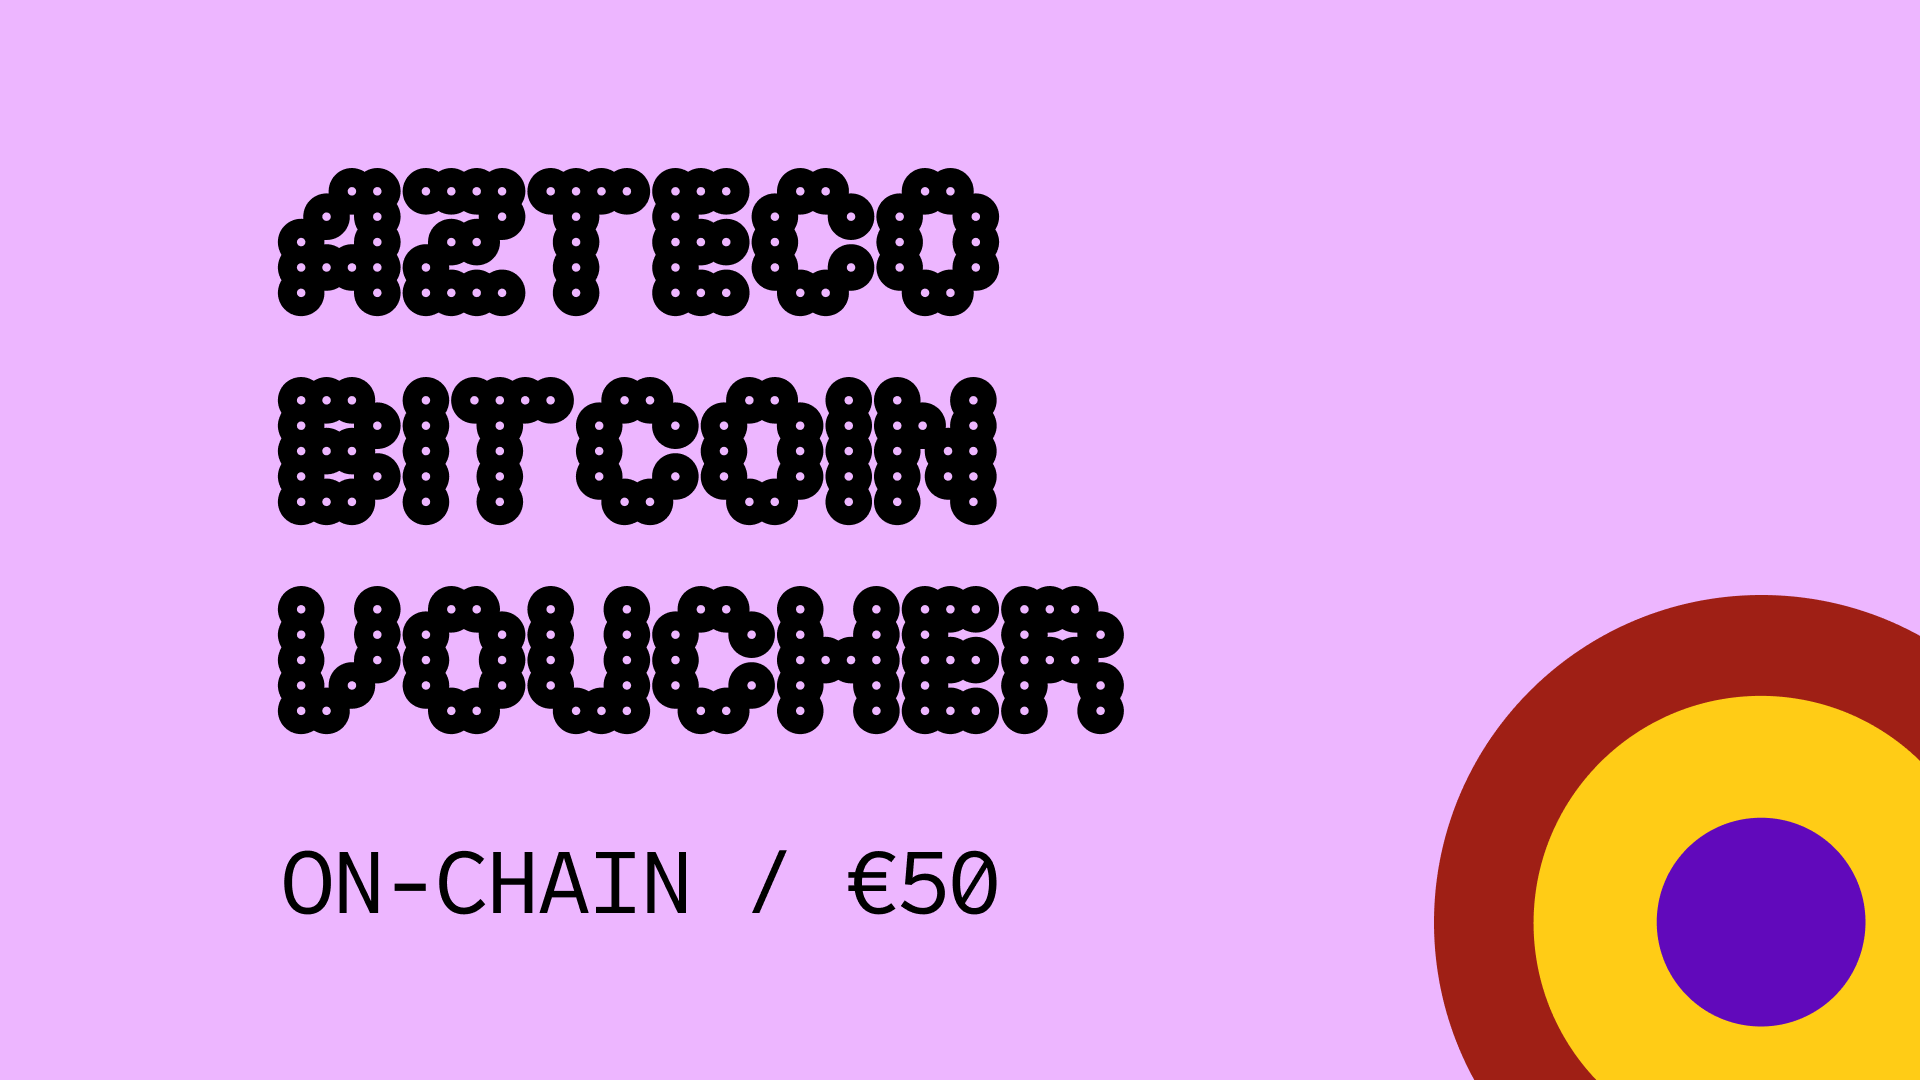 [$ 56.5] Azteco Bitcoin On-Chain €50 Voucher